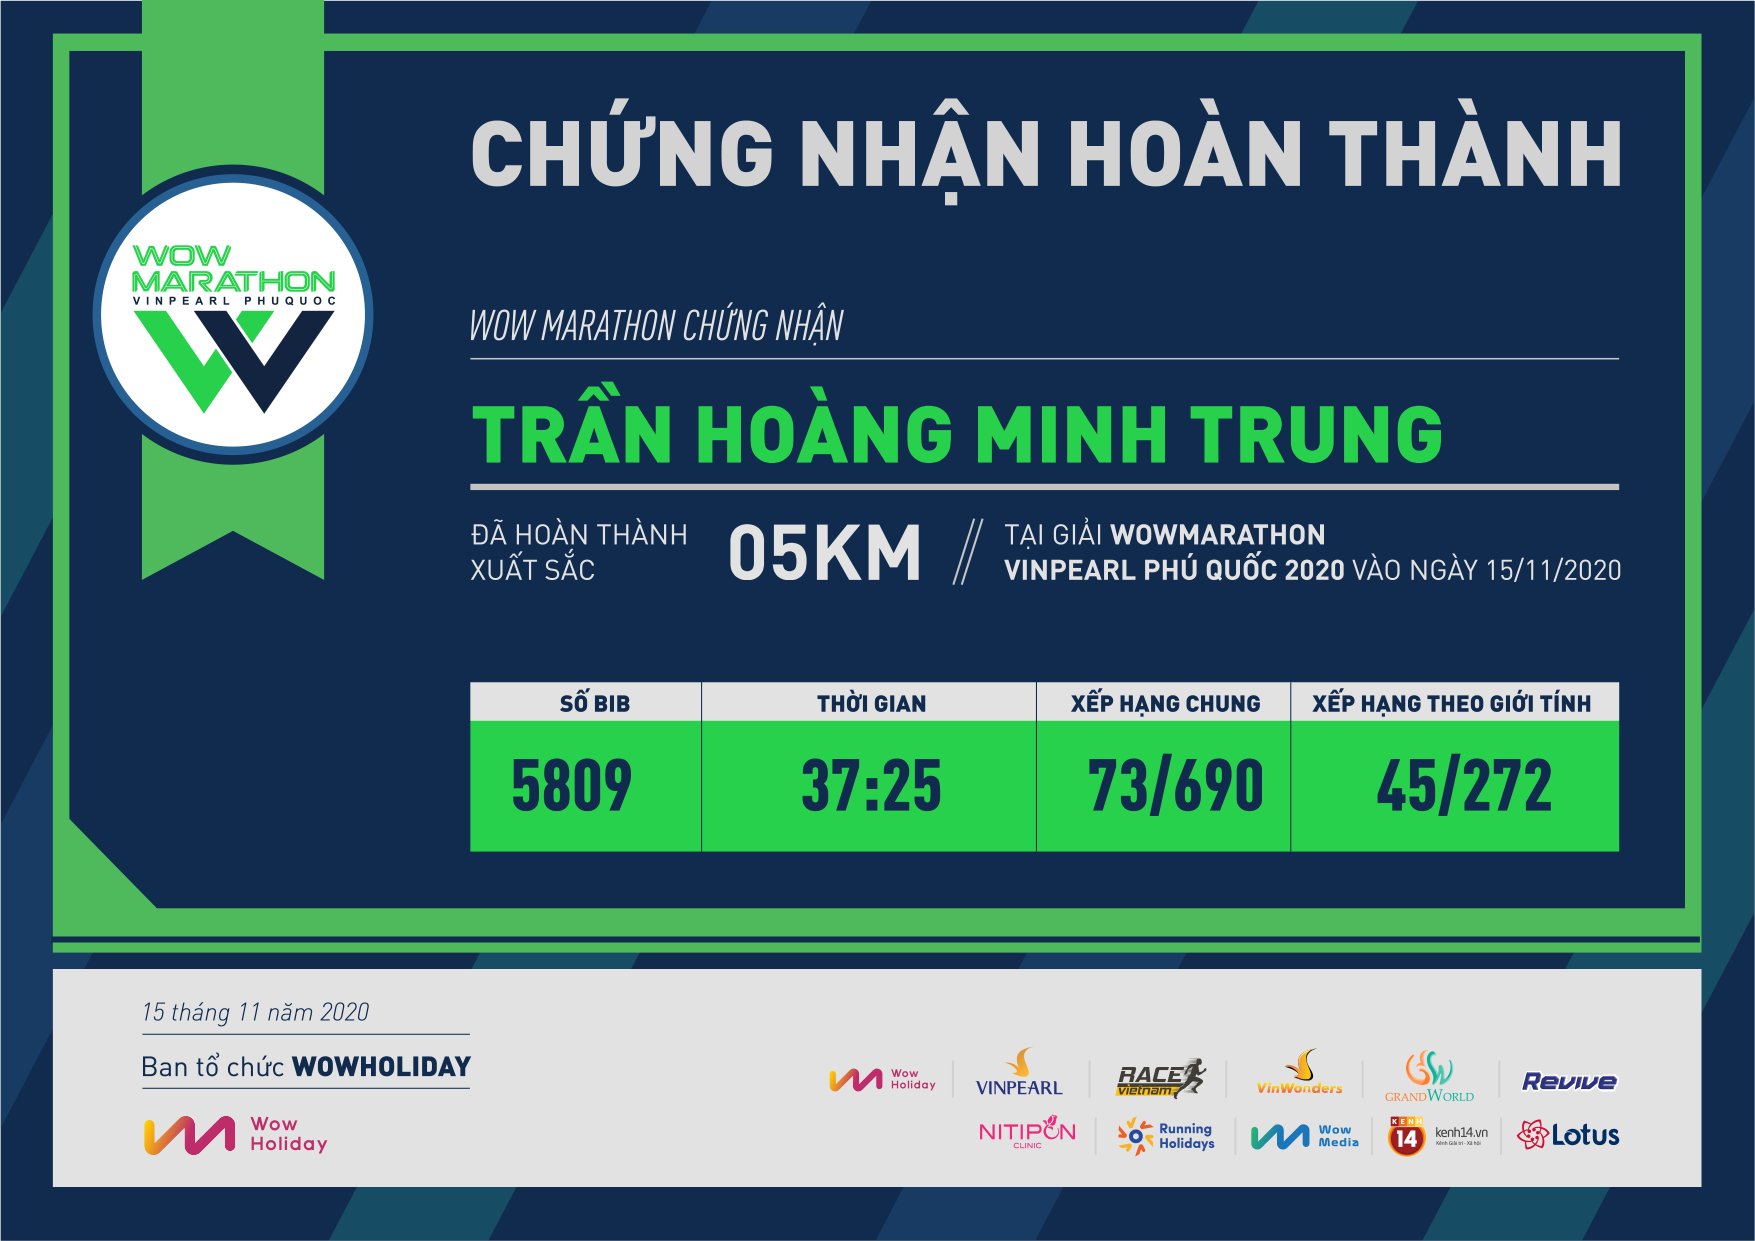 5809 - Trần Hoàng Minh Trung